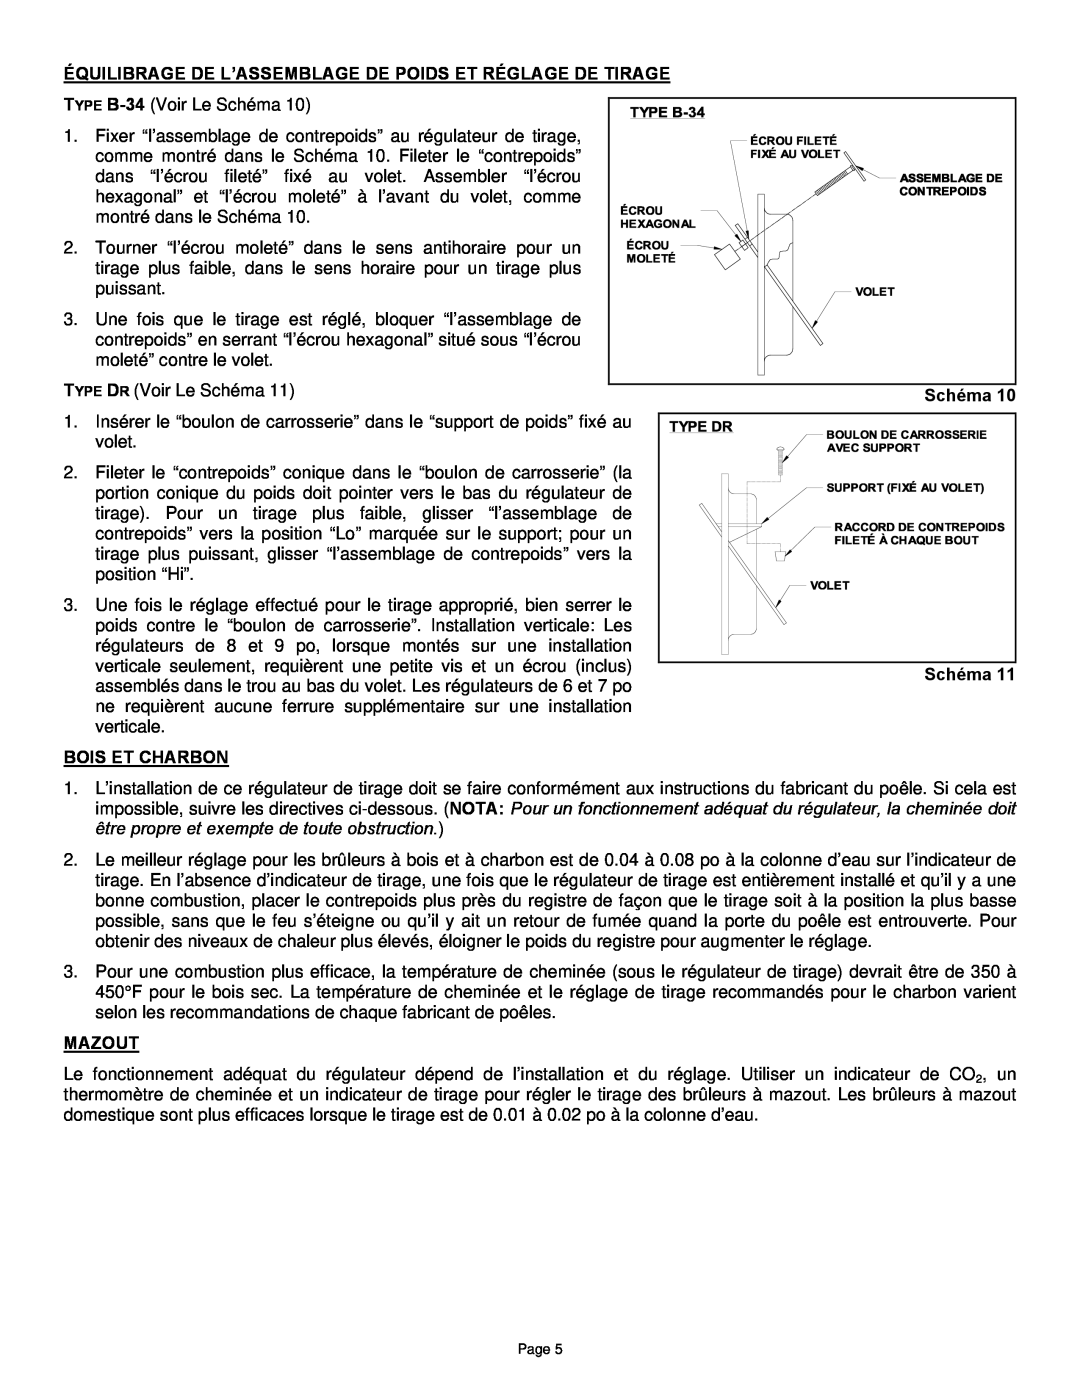 Field Controls B-34TJ manual Bois Et Charbon, Mazout, Schéma 